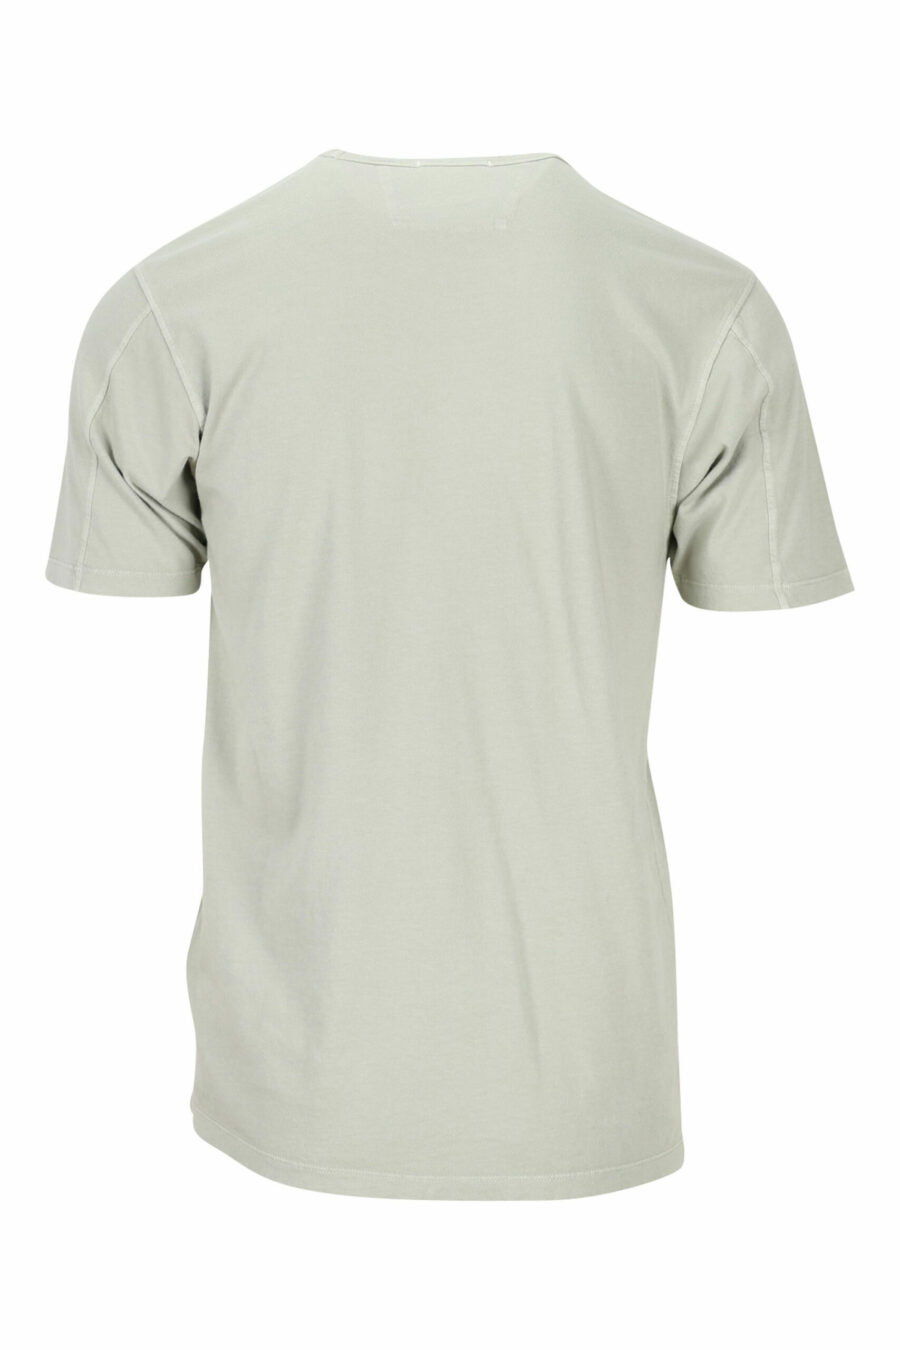 T-shirt beige avec mini-logo centré - 7620943594454 1 scaled